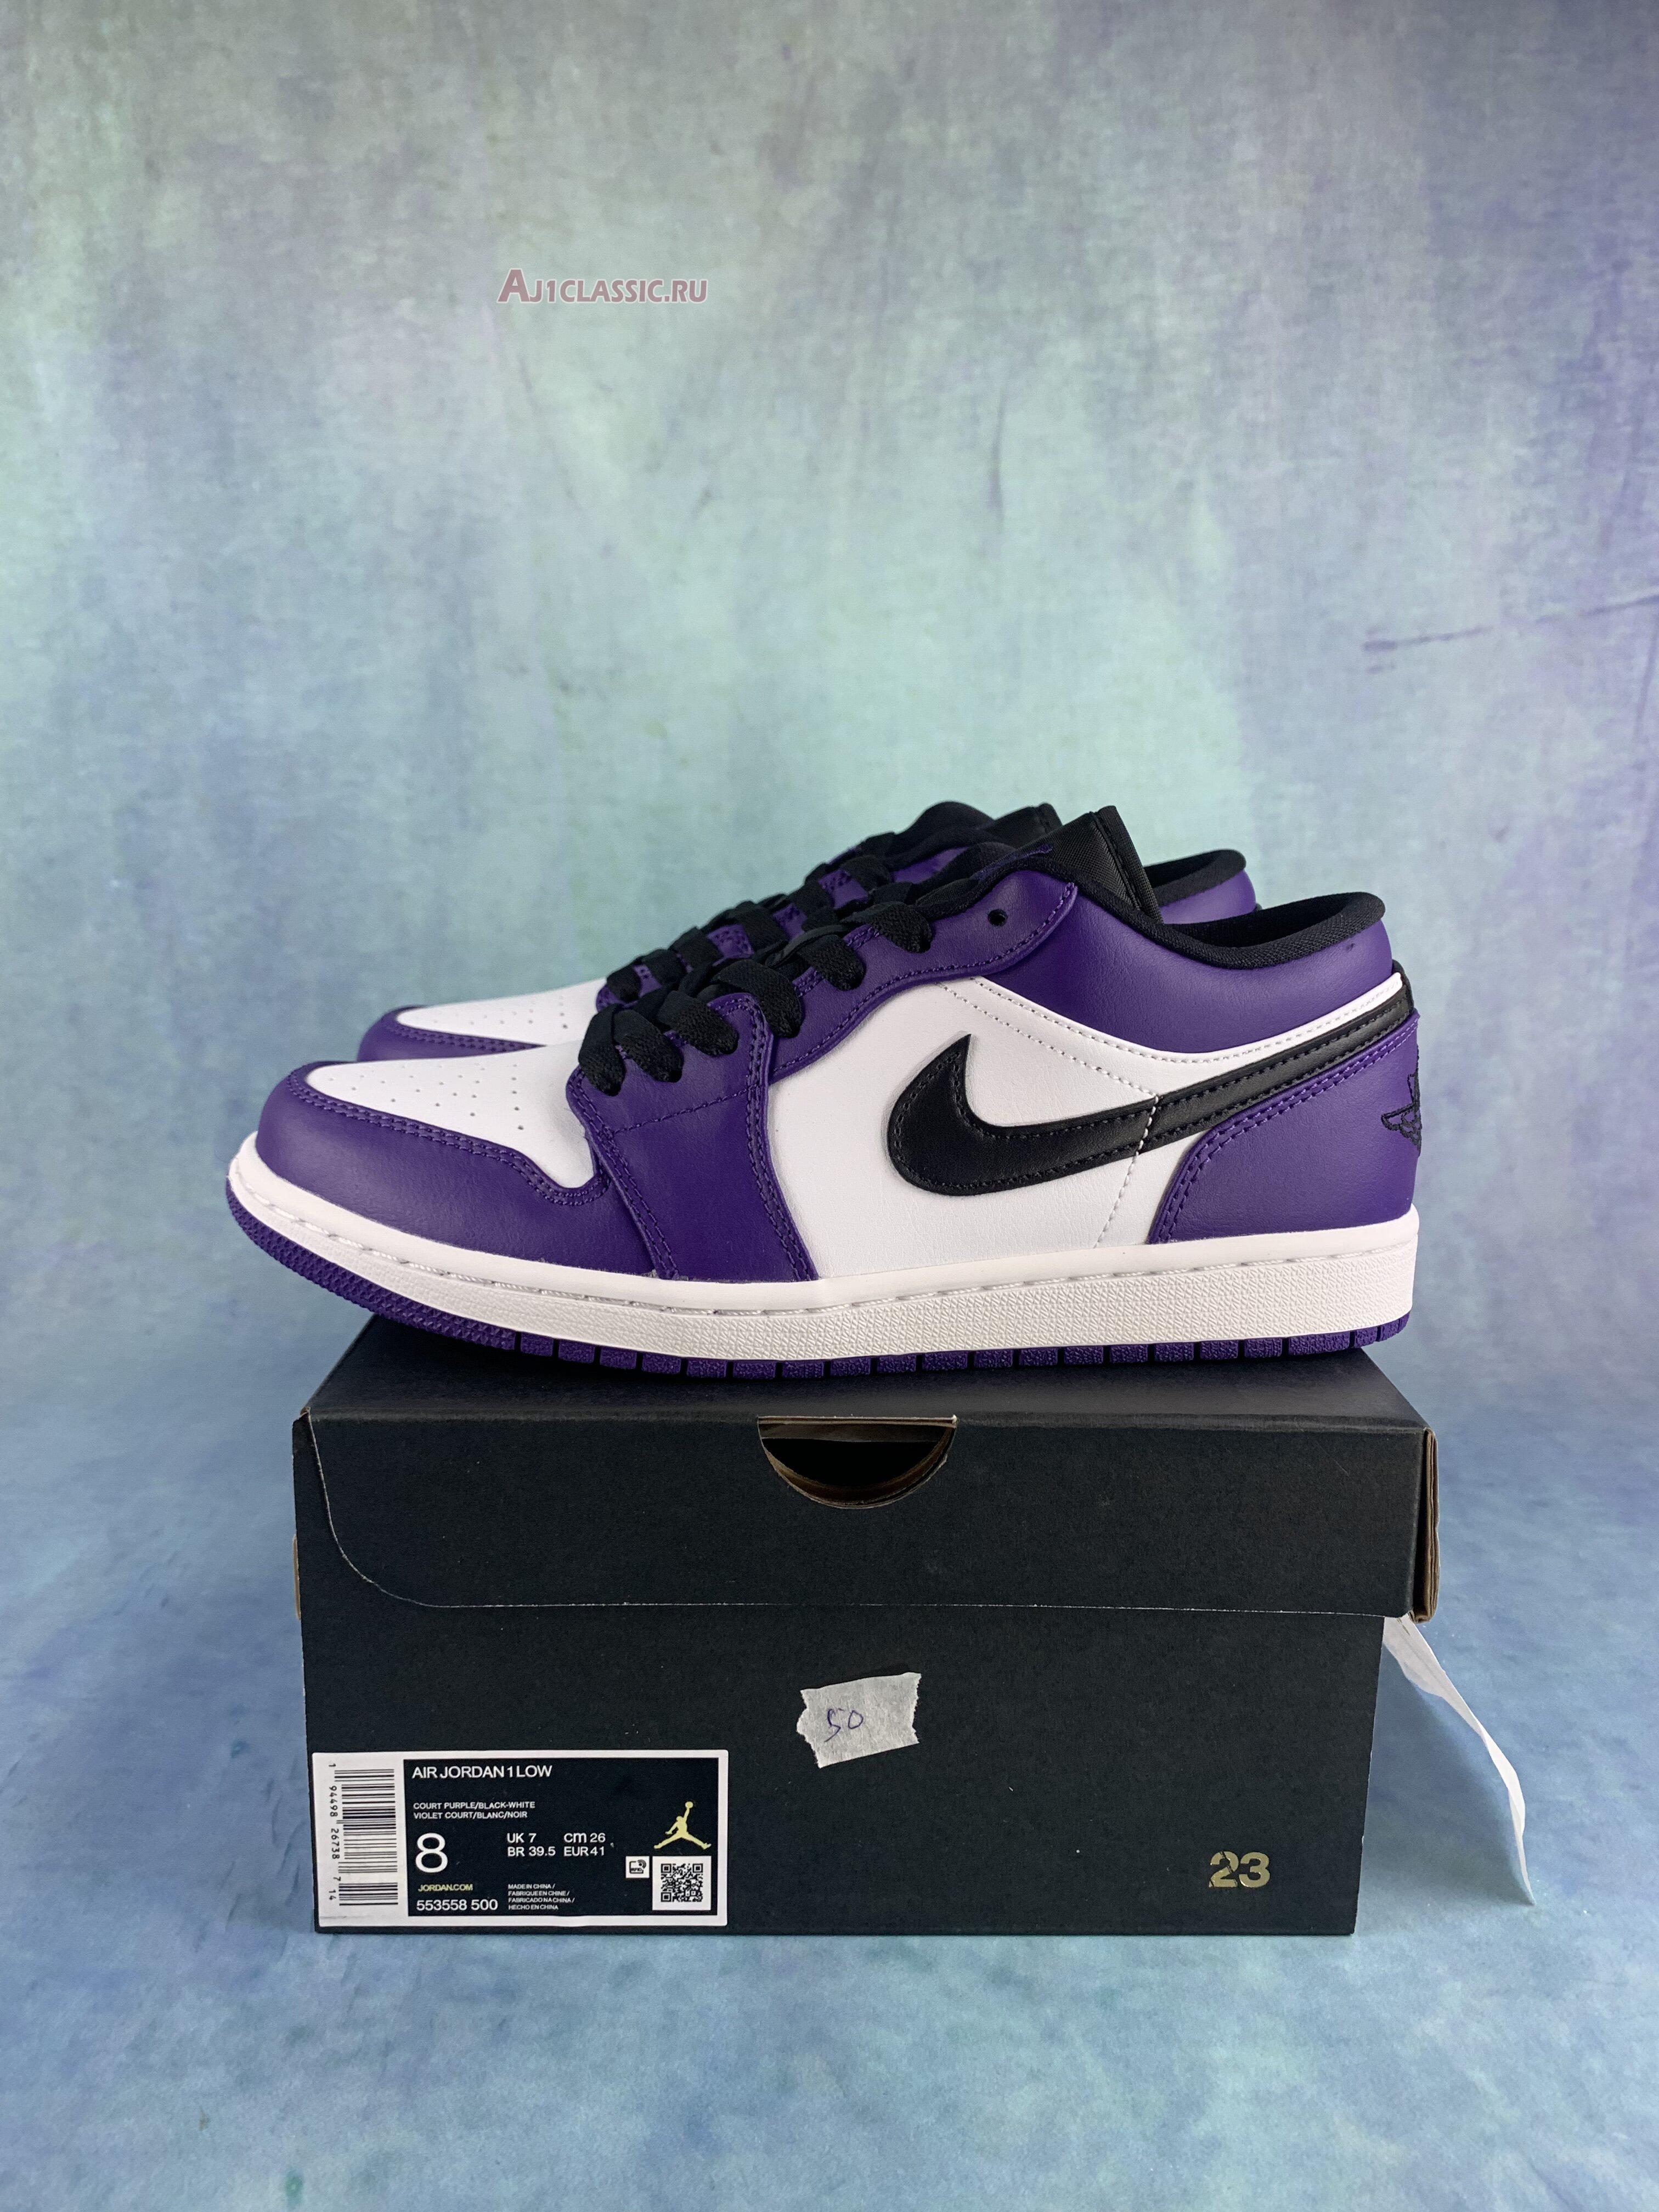 Air Jordan 1 Low "Court Purple" 553558-500-2